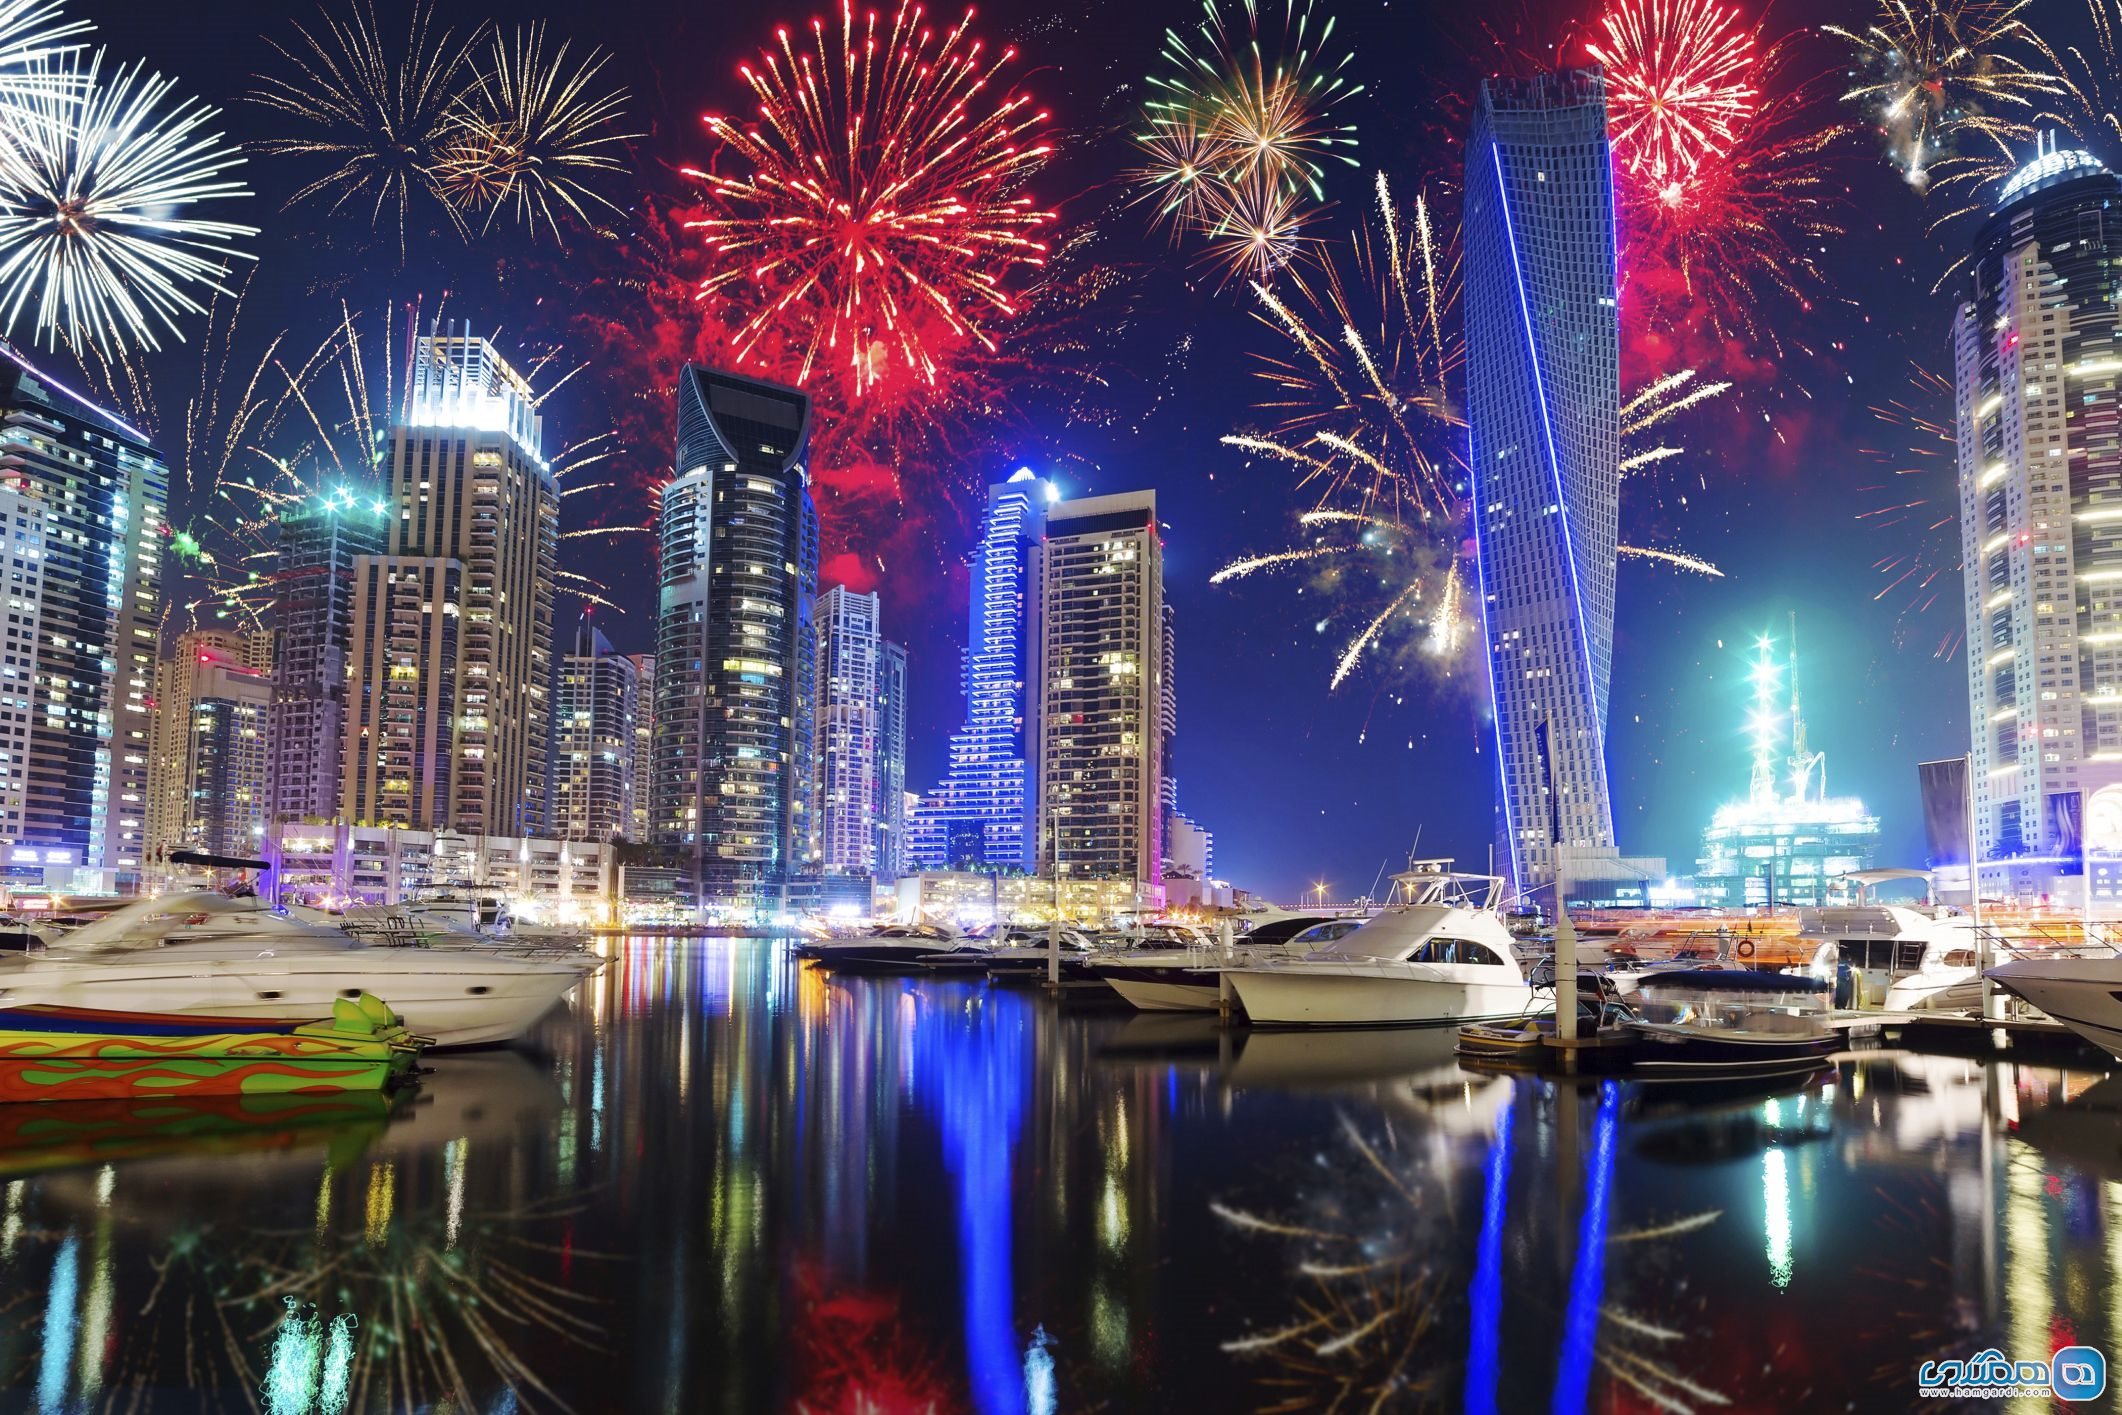 بهترین شهرهای جهان برای تجربه سال نو میلادی